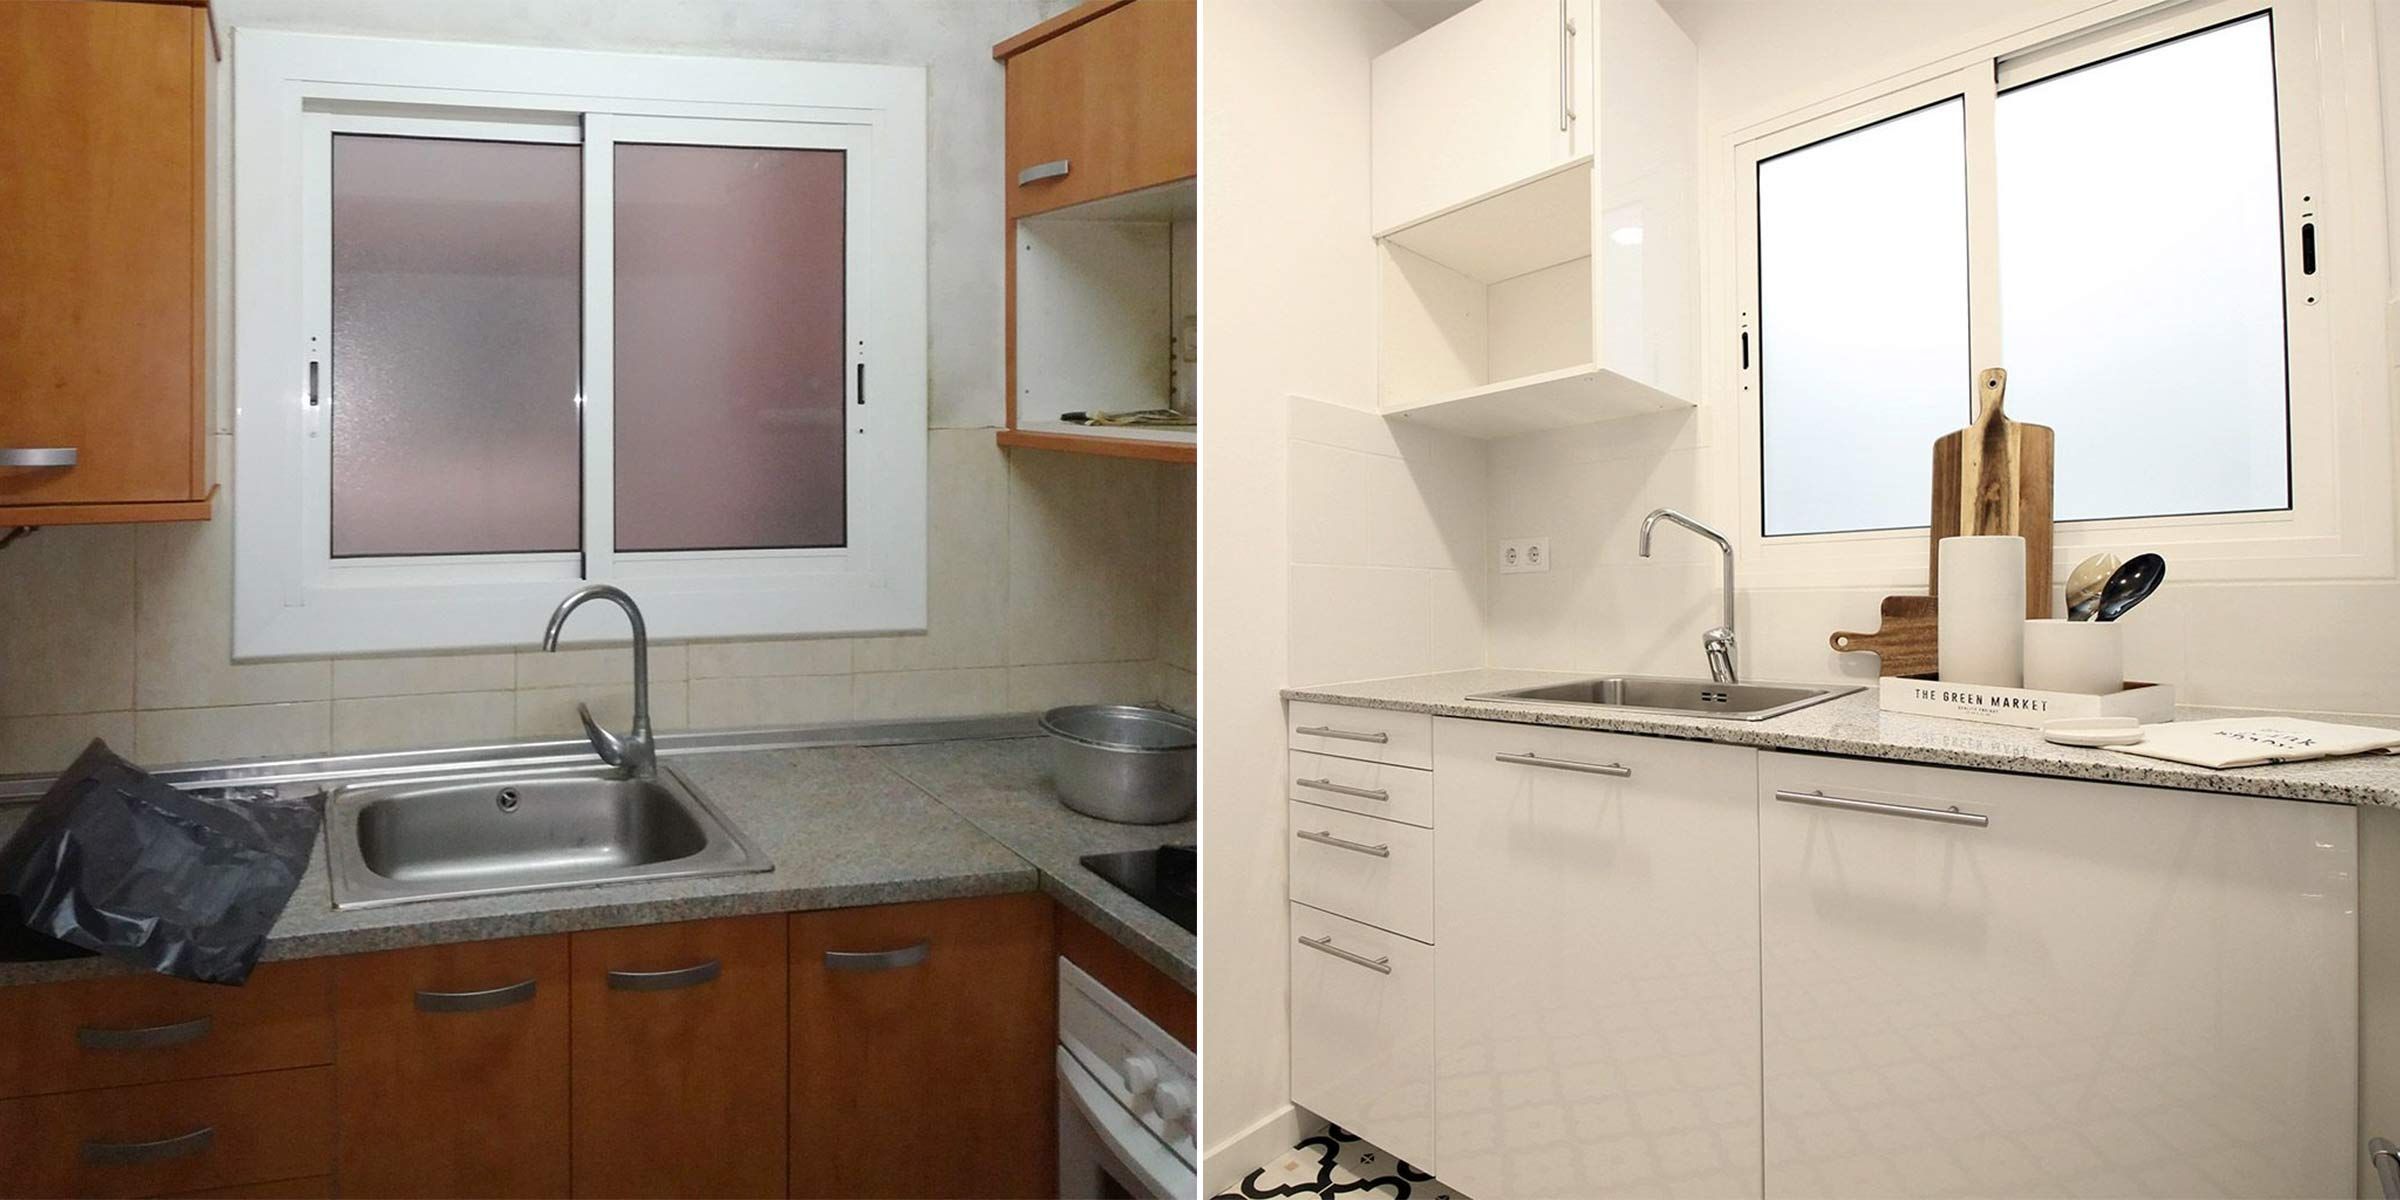 El antes y después de esta cocina nos enseña que es posible estrenar cocina  sin hacer